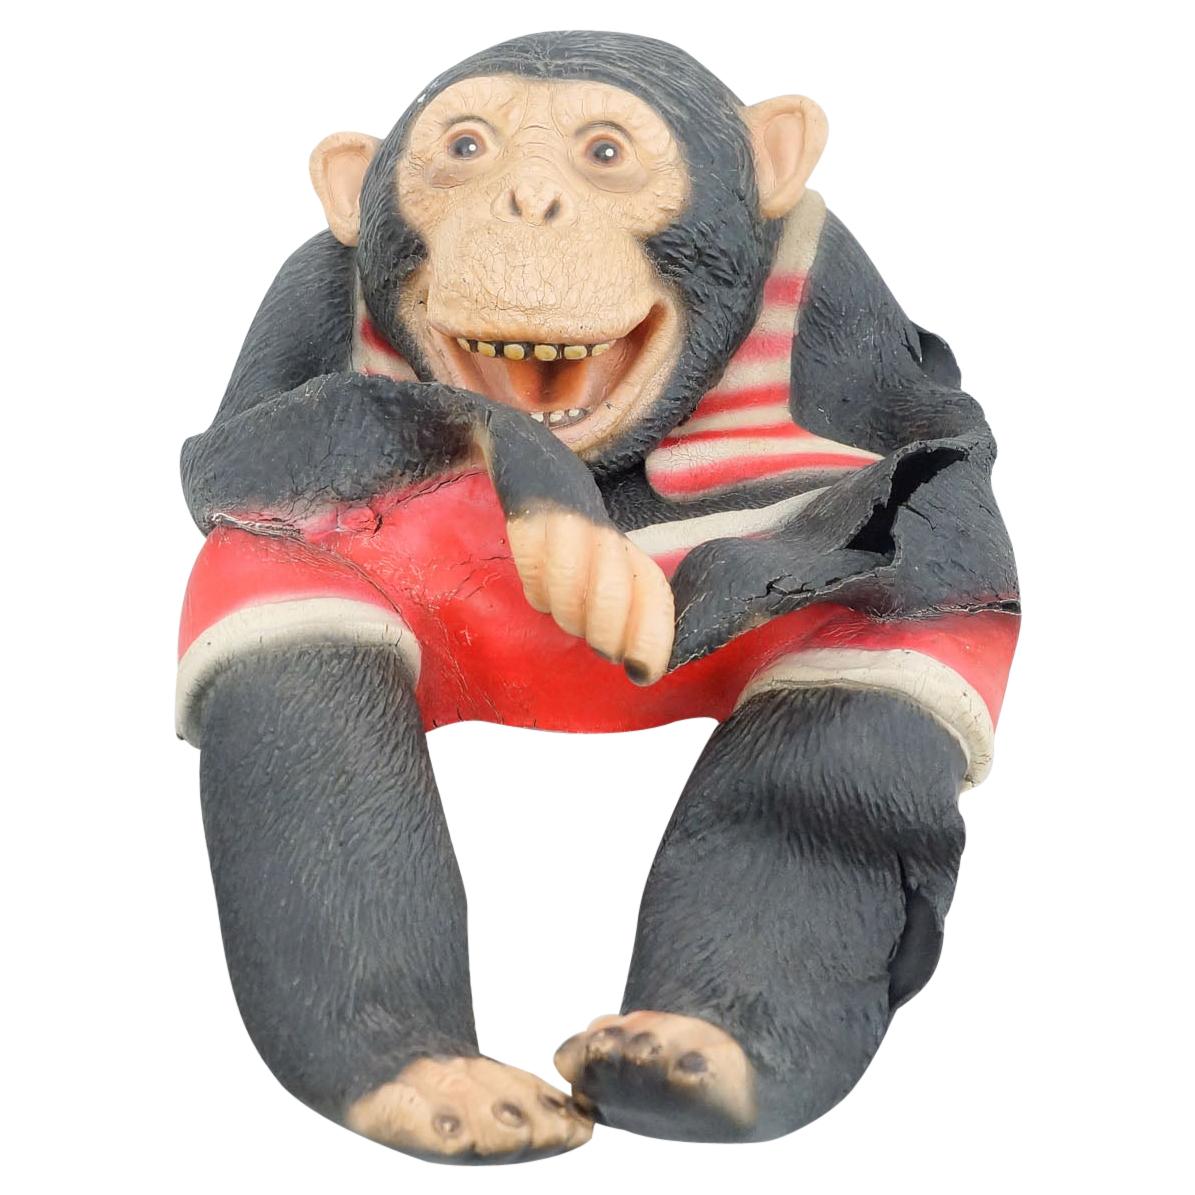 Antique Chimpanzee Rubber Puppet